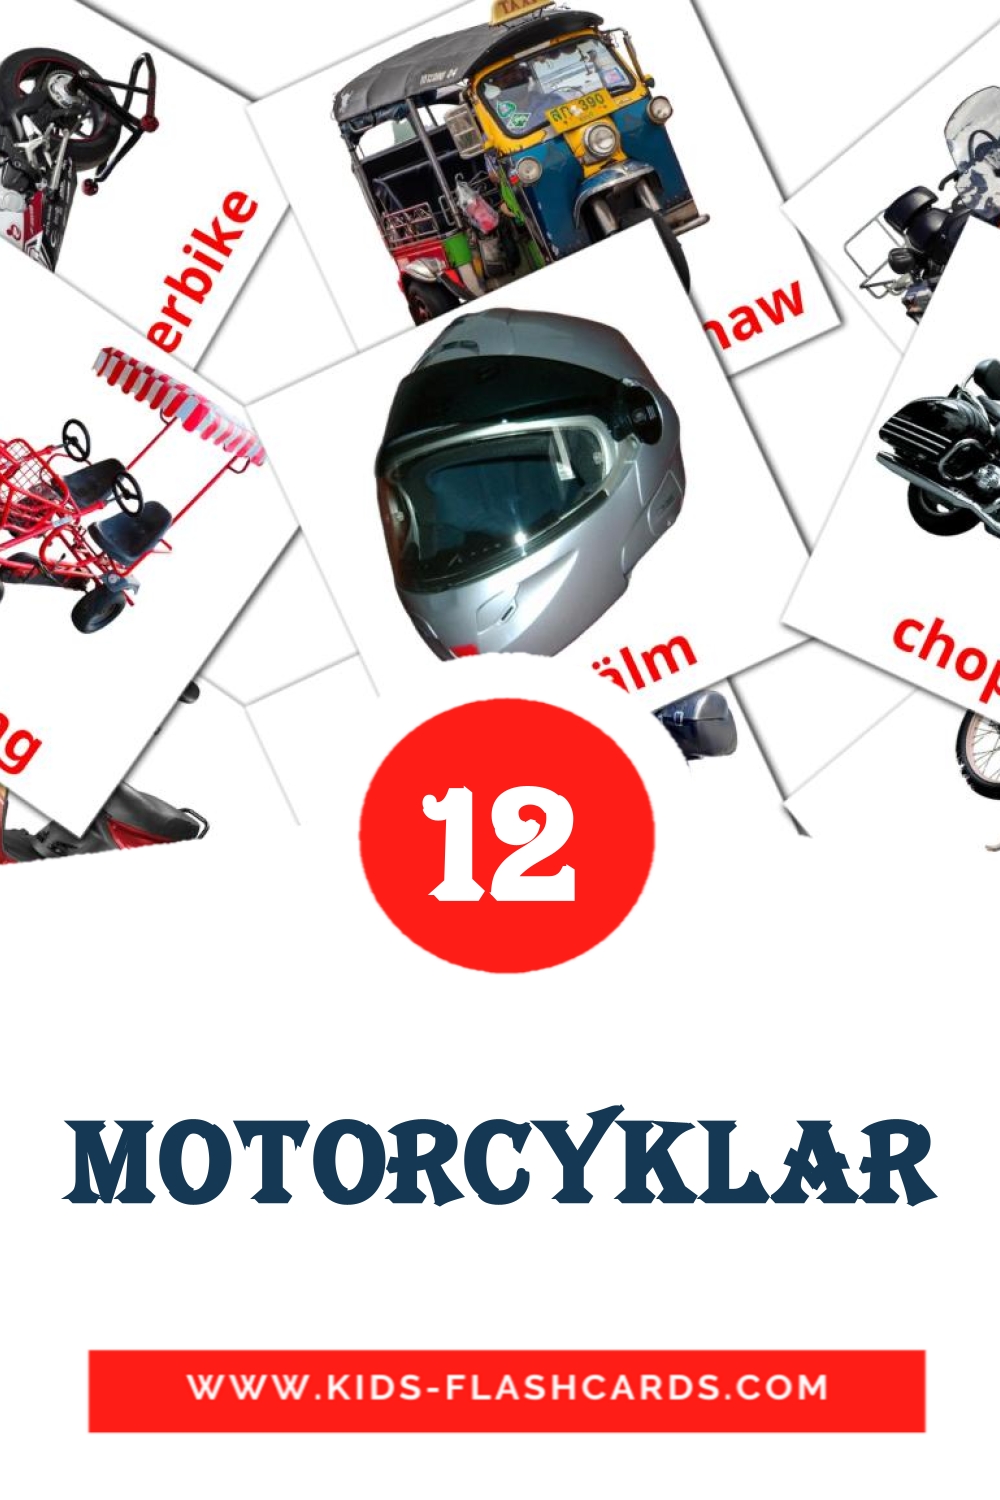 12 tarjetas didacticas de Motorcyklar para el jardín de infancia en sueco